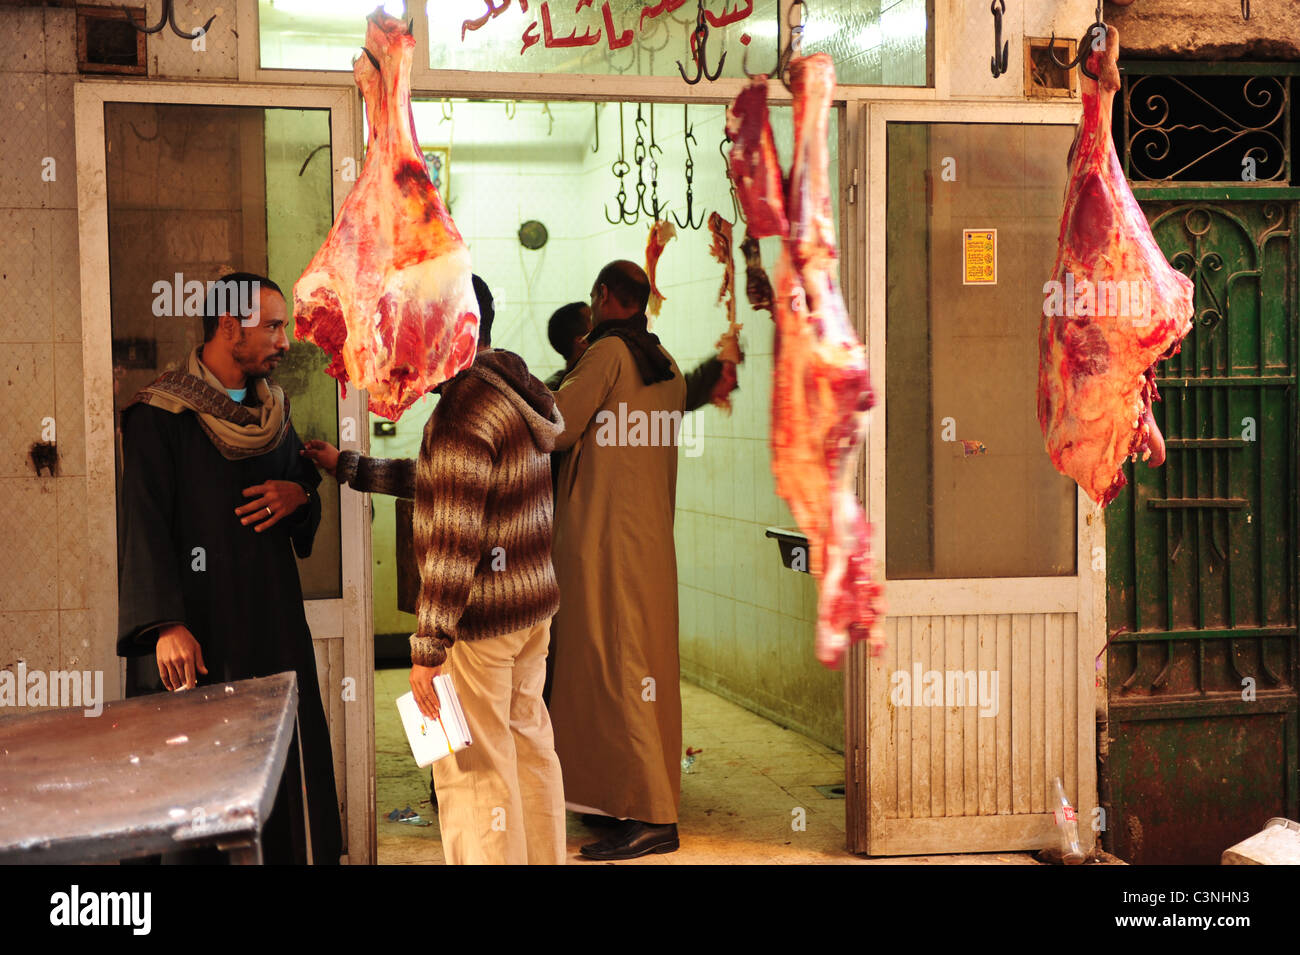 Afrika Ägypten ägyptischen Luxor El Souk Markt im Nahen Osten Gasse einkaufen und Essen - Männer in einer Metzgerei mit Fleisch hängen Stockfoto